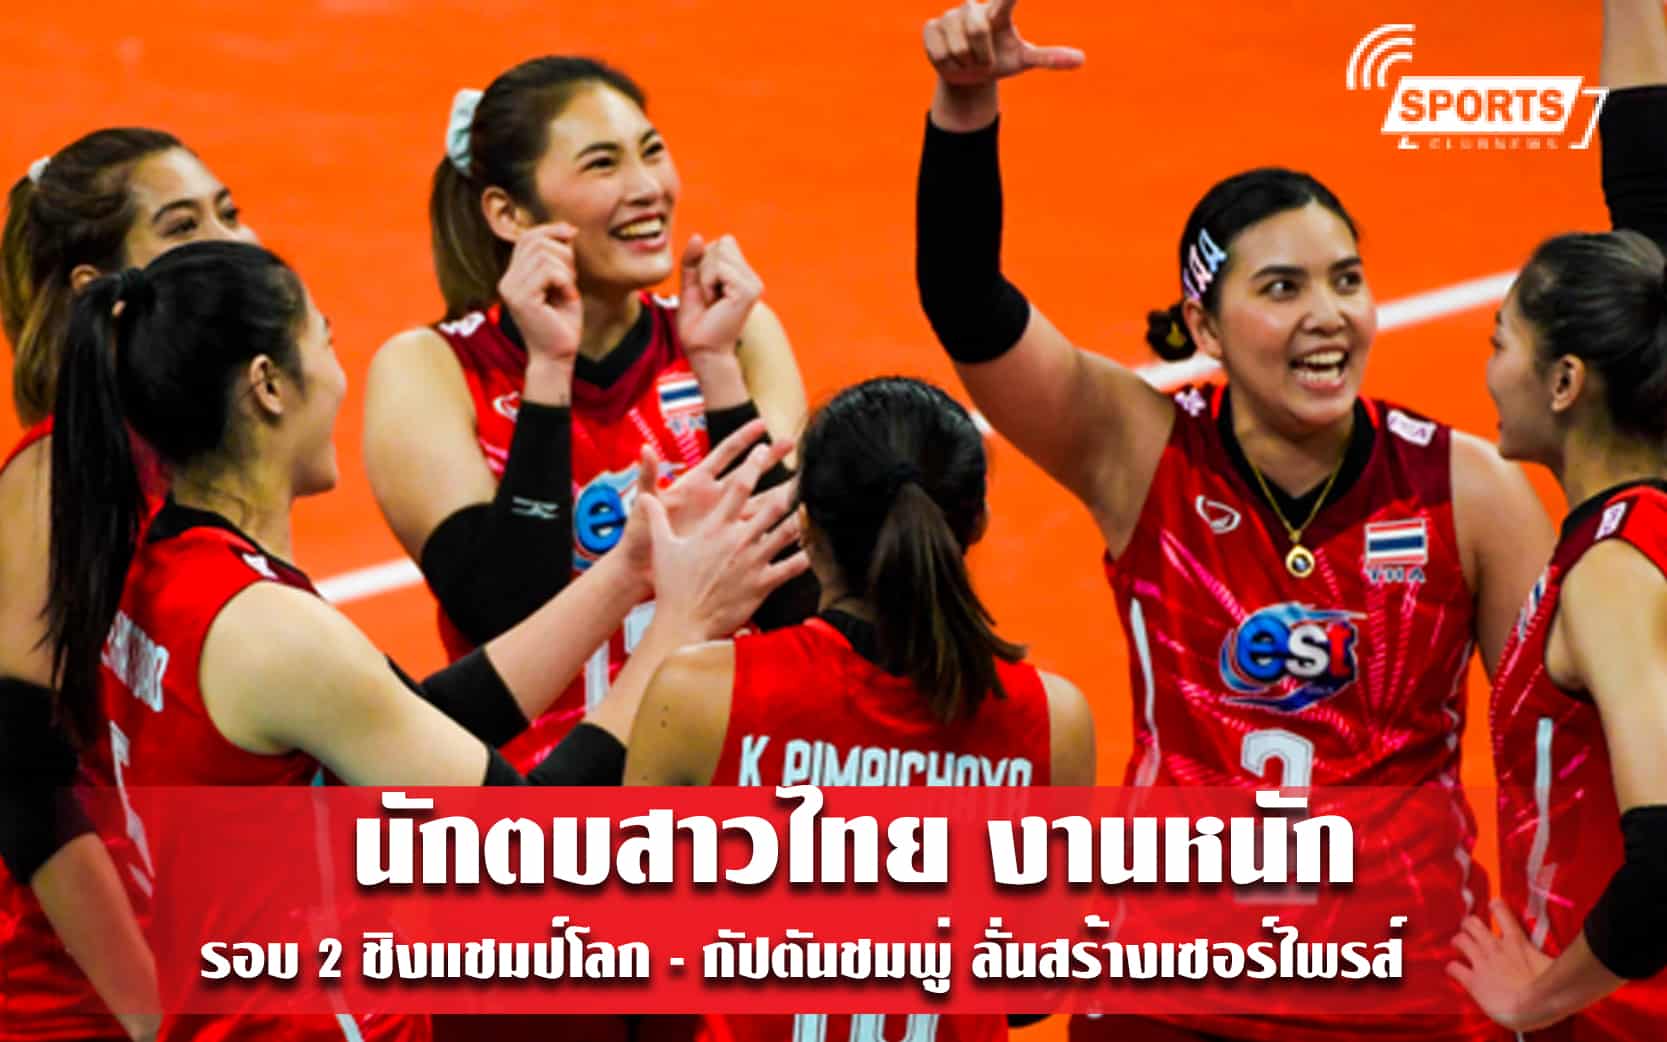 นักตบสาวไทย งานหนักรอบ 2 ชิงแชมป์โลก - กัปตันชมพู่ ลั่นสร้างเซอร์ไพรส์